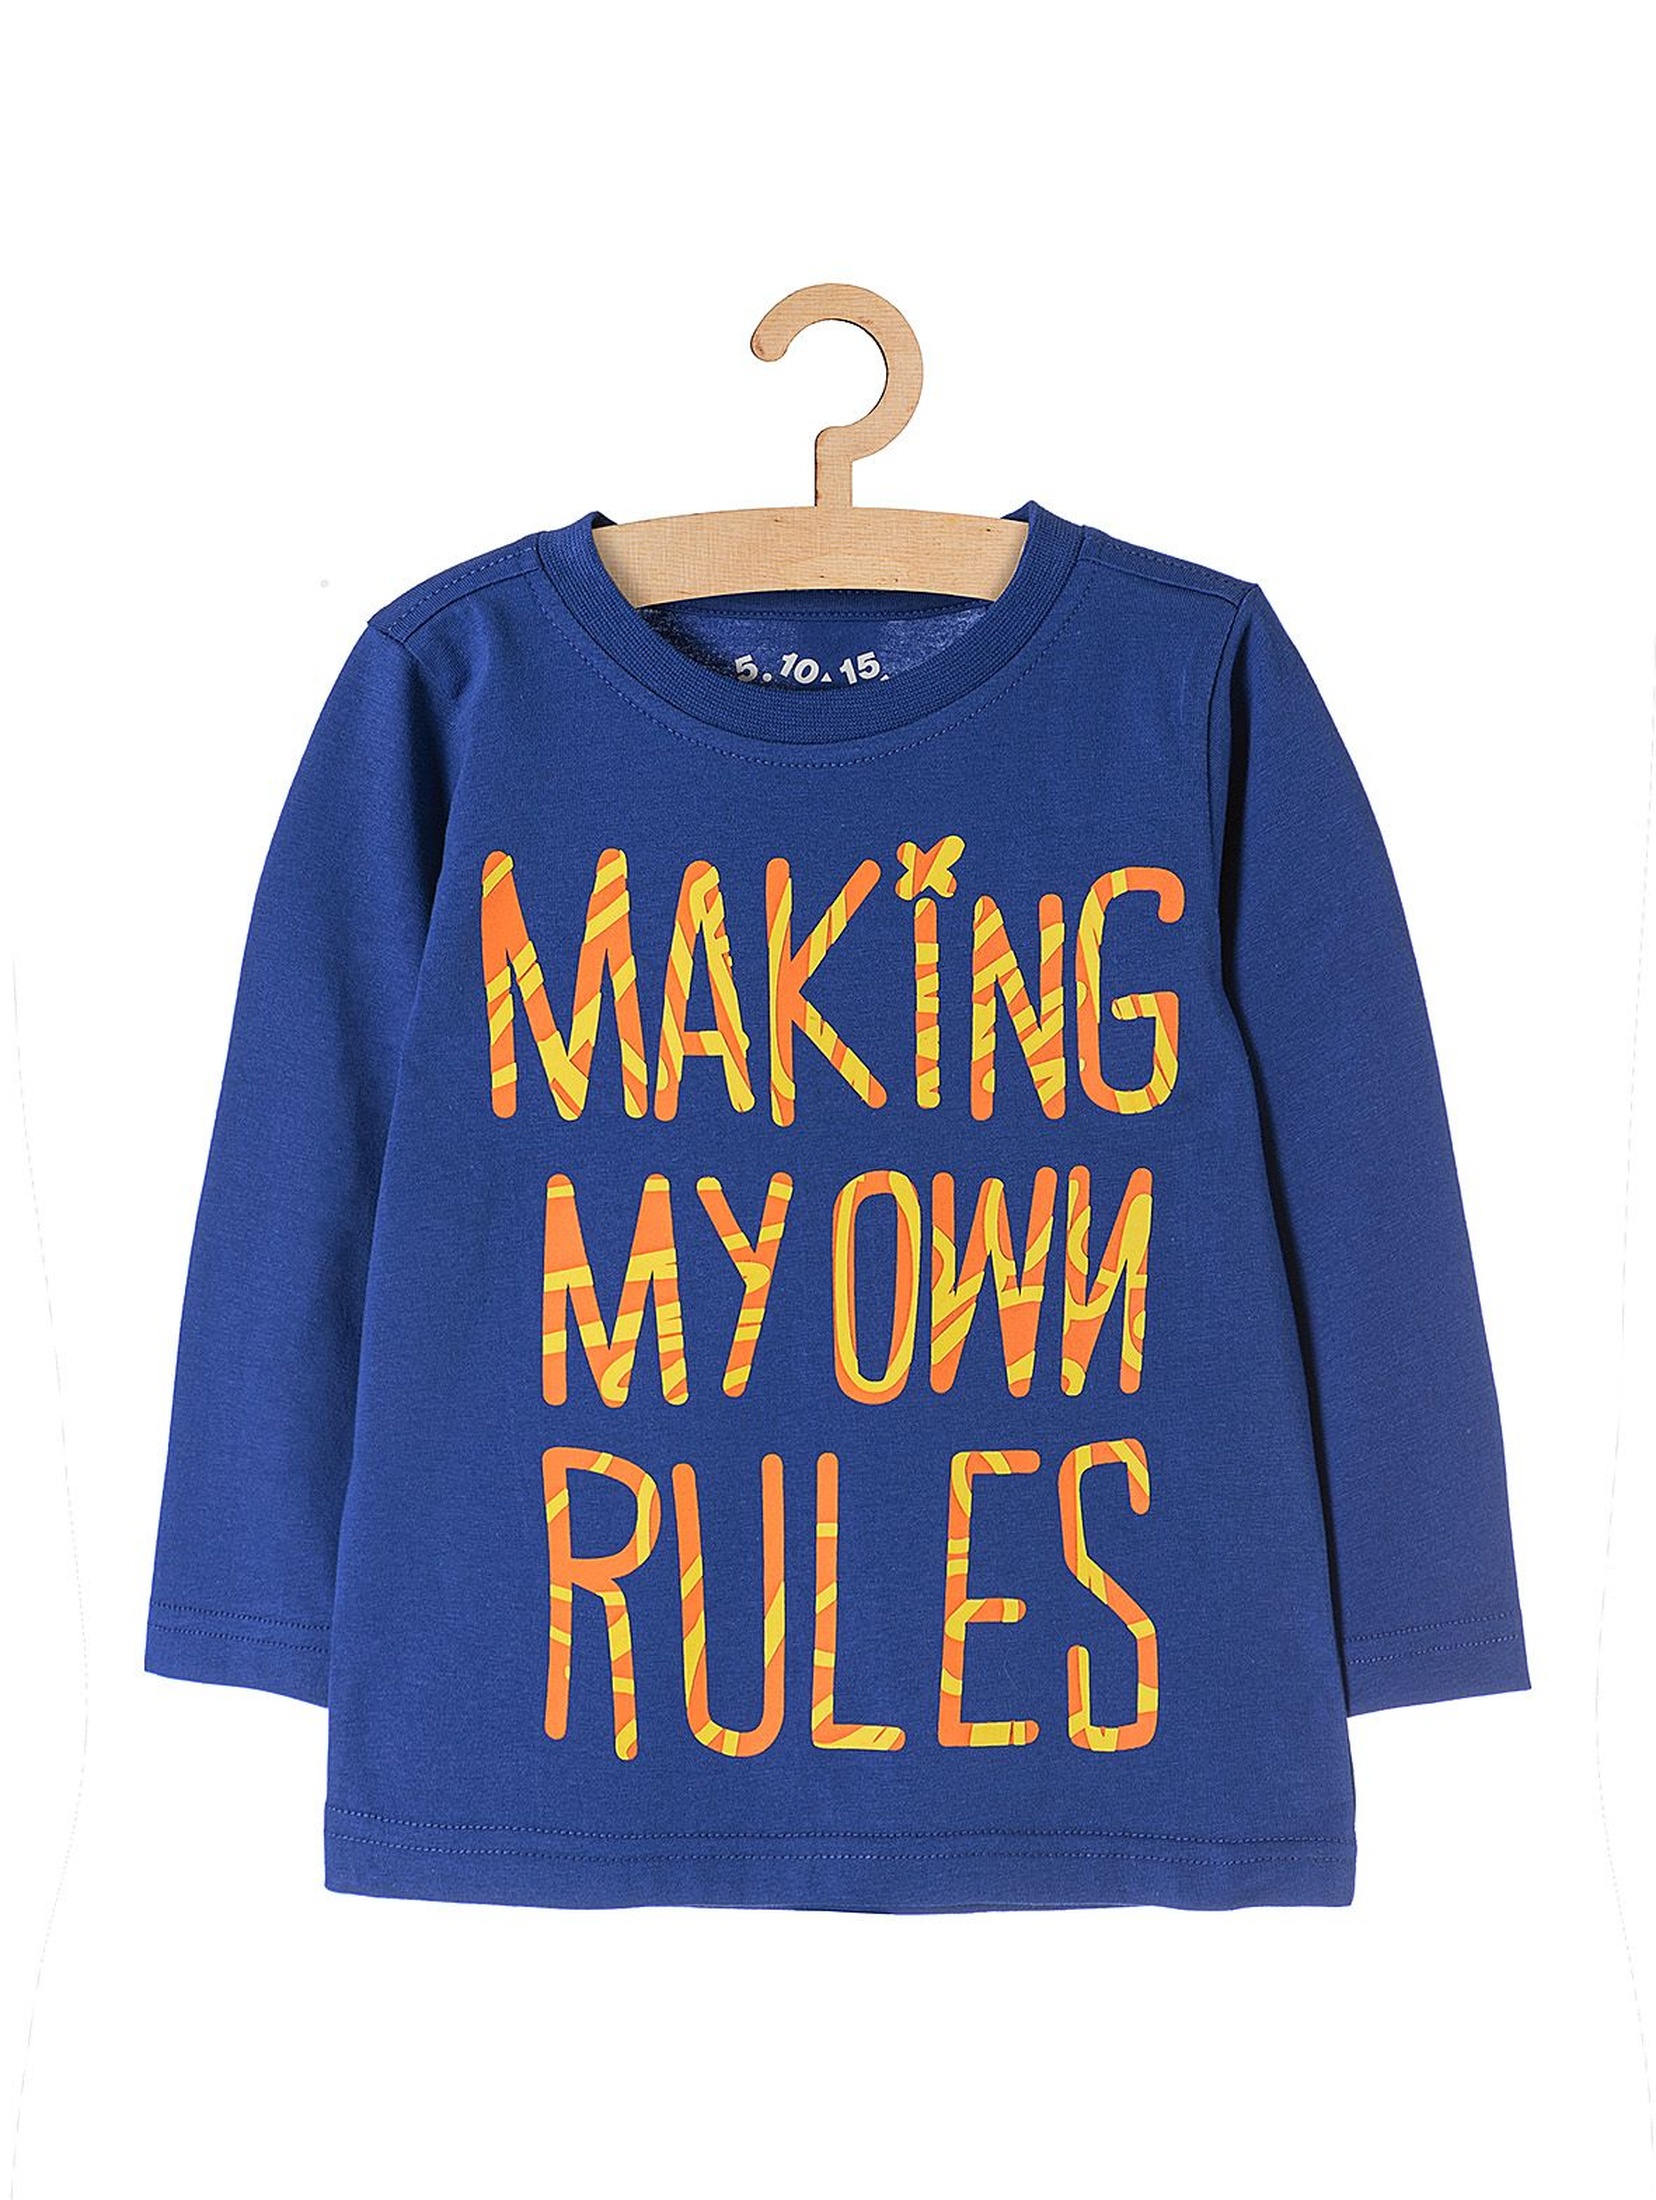 Bluzka chłopięca niebieska z napisem "Making my own rules"